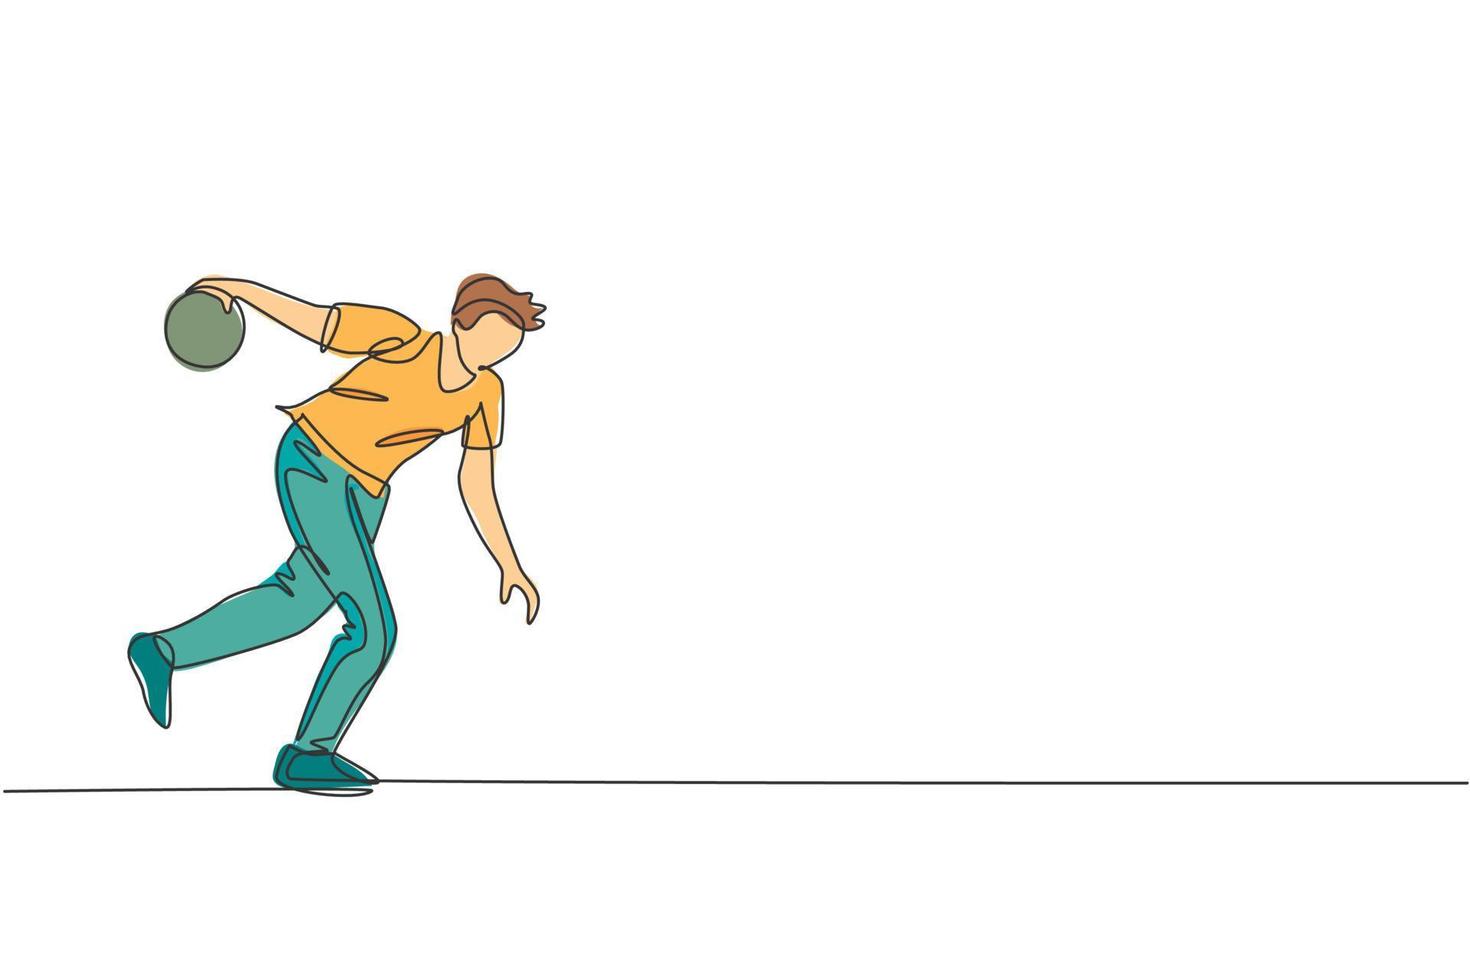 un disegno a linea singola di un giovane talentuoso giocatore di bowling che lancia la palla per colpire l'illustrazione grafica di vettore dei birilli. stile di vita delle persone sane e concetto di sport. moderno disegno a linea continua